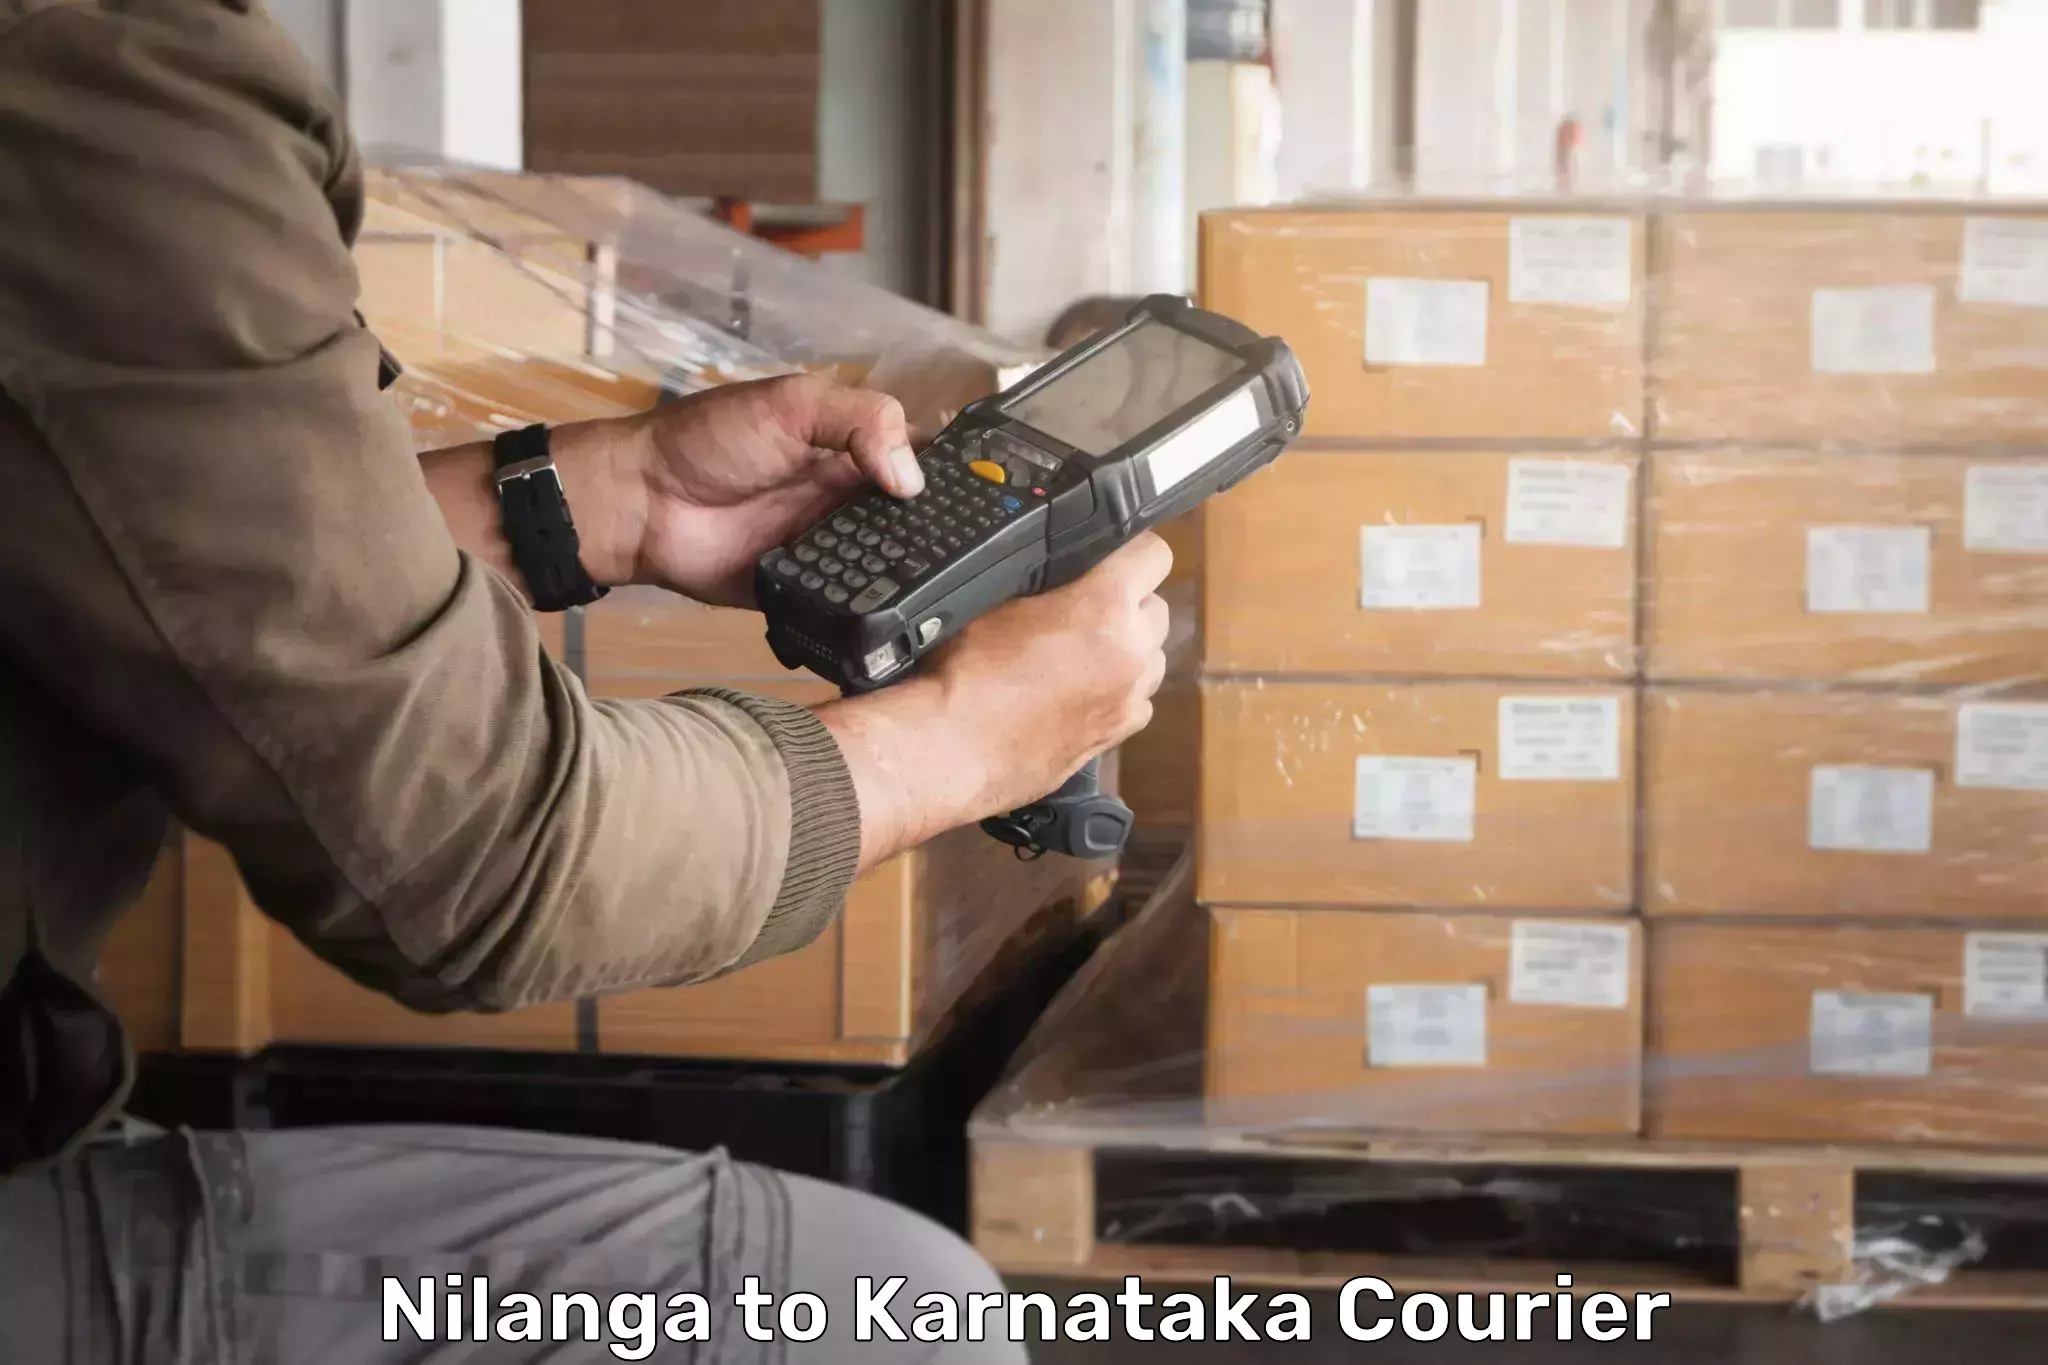 Pharmaceutical courier in Nilanga to Thirthahalli